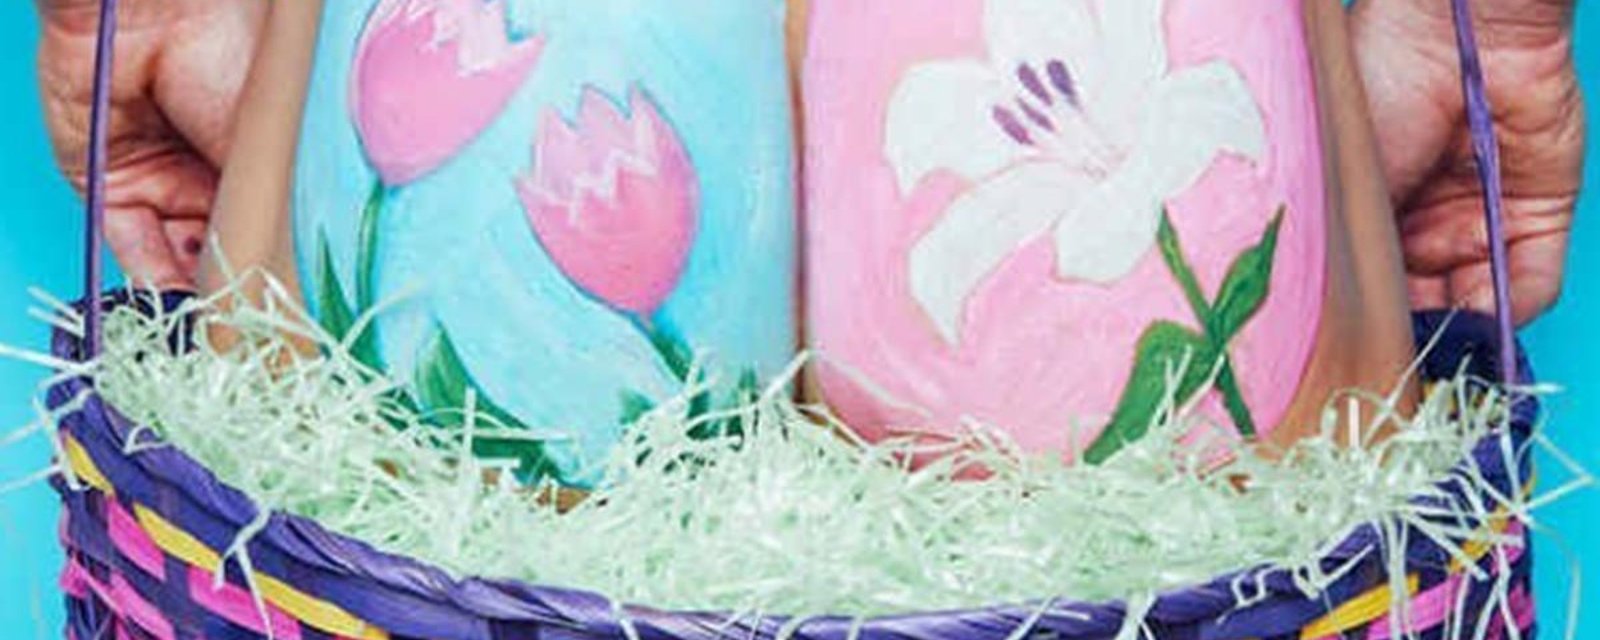 La nouvelle tendance de Pâques et de peindre des oeufs sur ses fesses